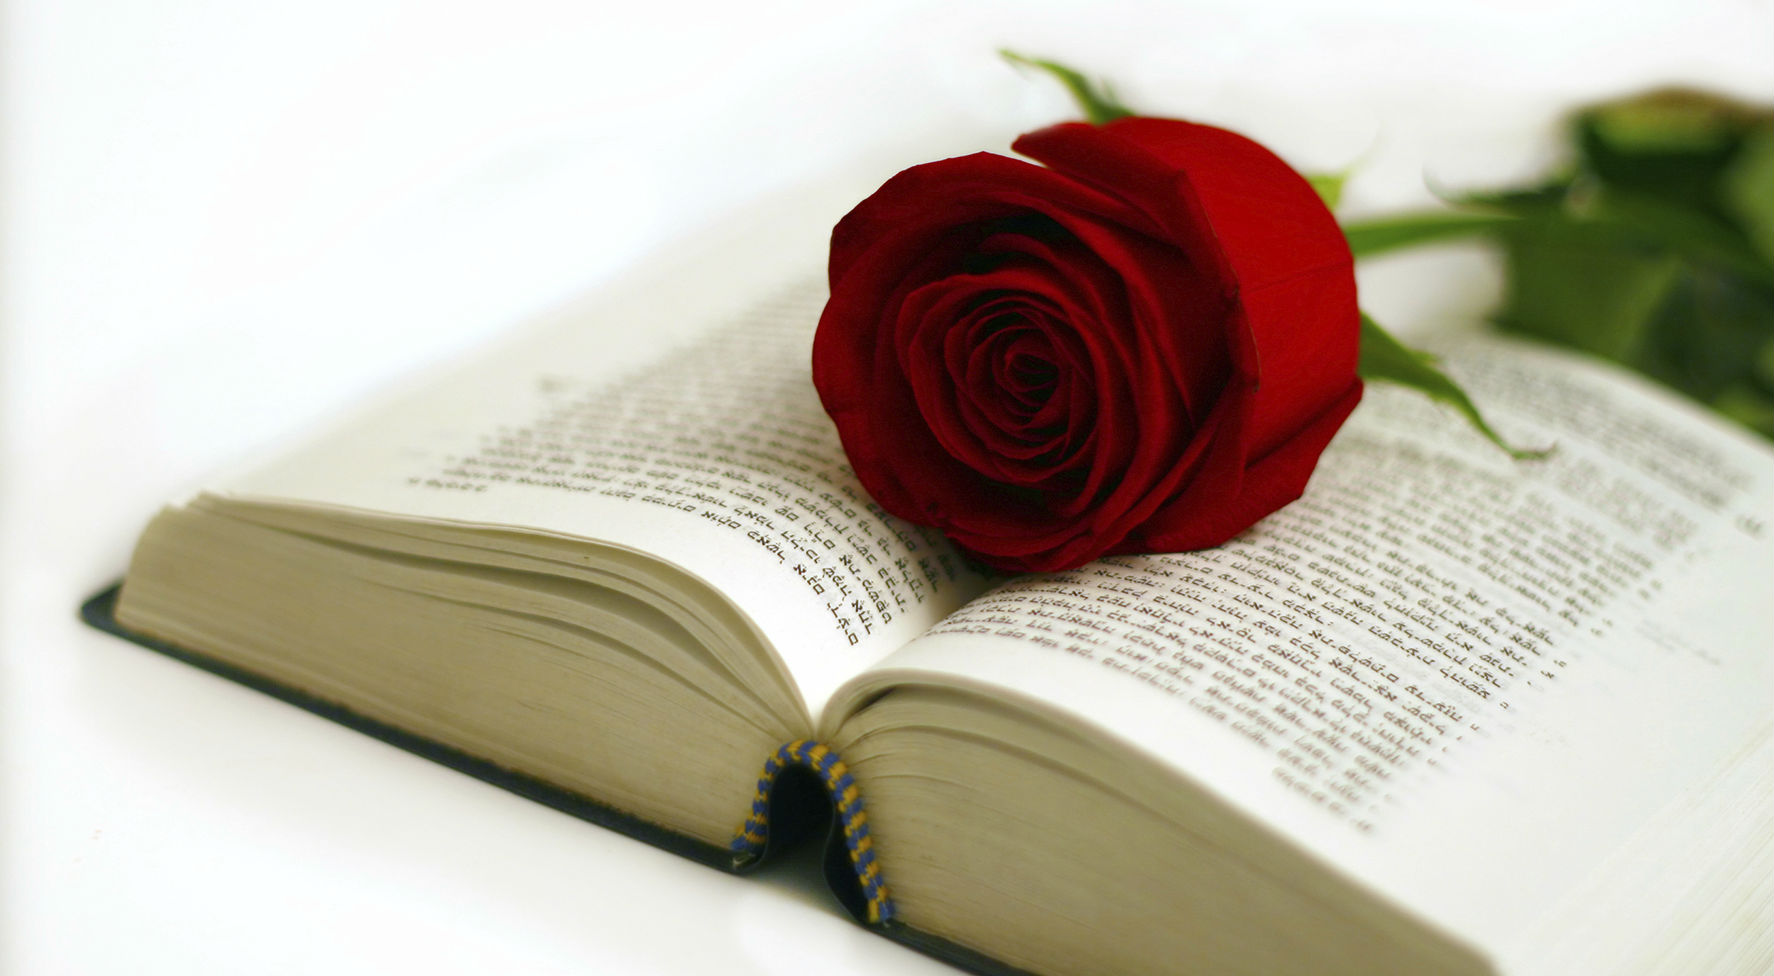 Giornata internazionale del libro: cultura e romanticismo con la leggenda di Sant Jordi